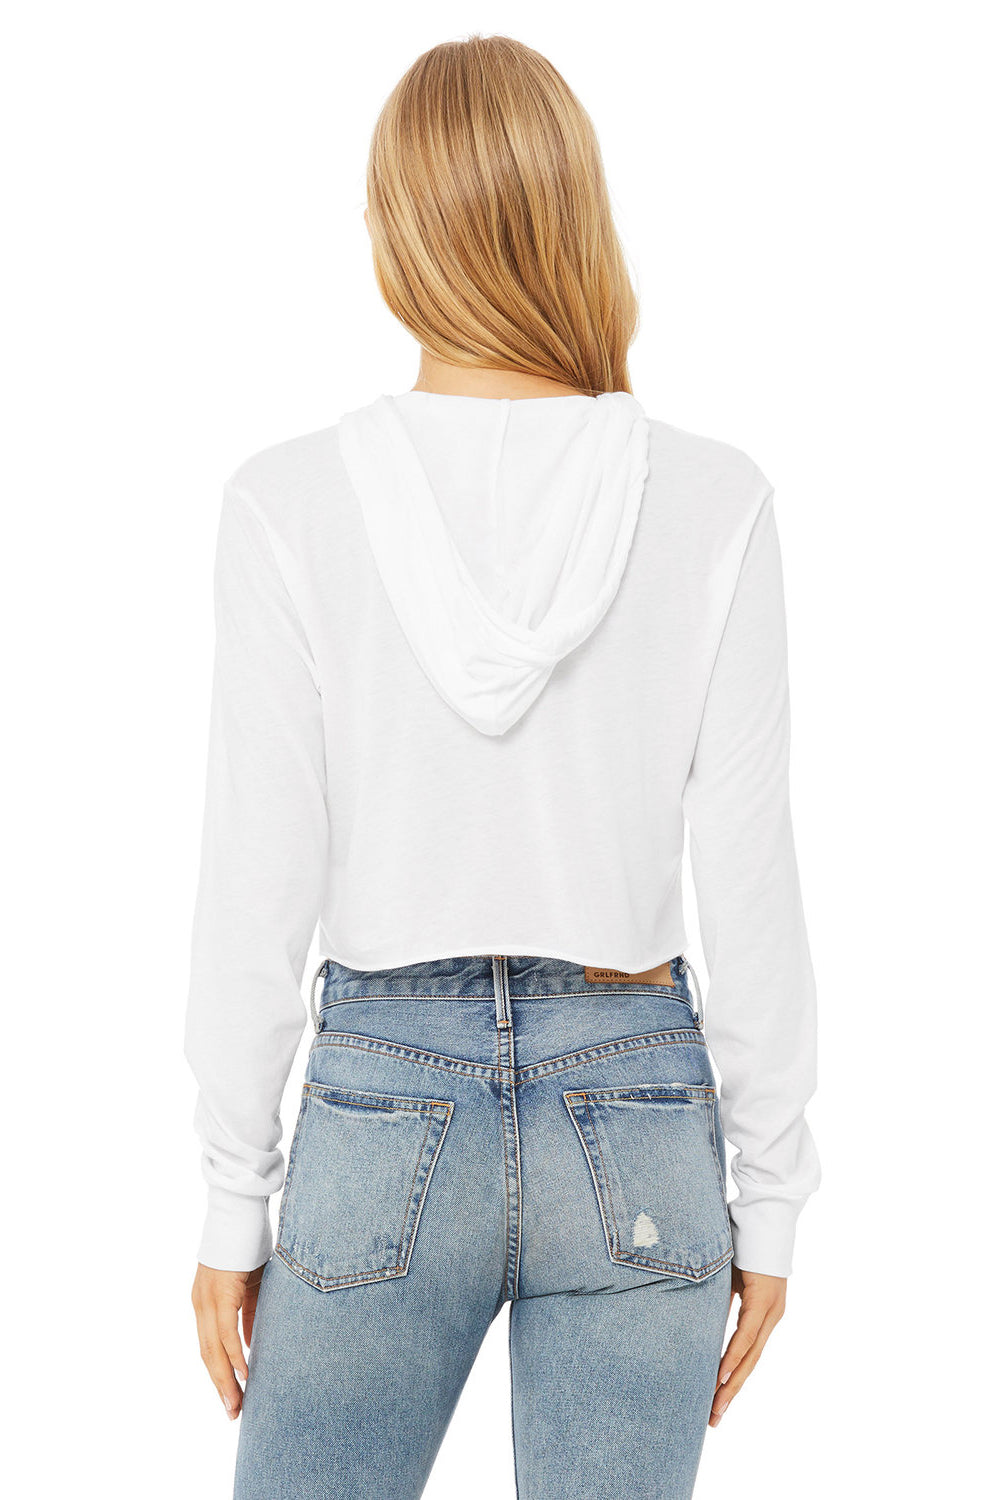 Bella + Canvas 8512 Womens Crop Long Sleeve Hooded Sweatshirt Hoodie Solid White Model Back